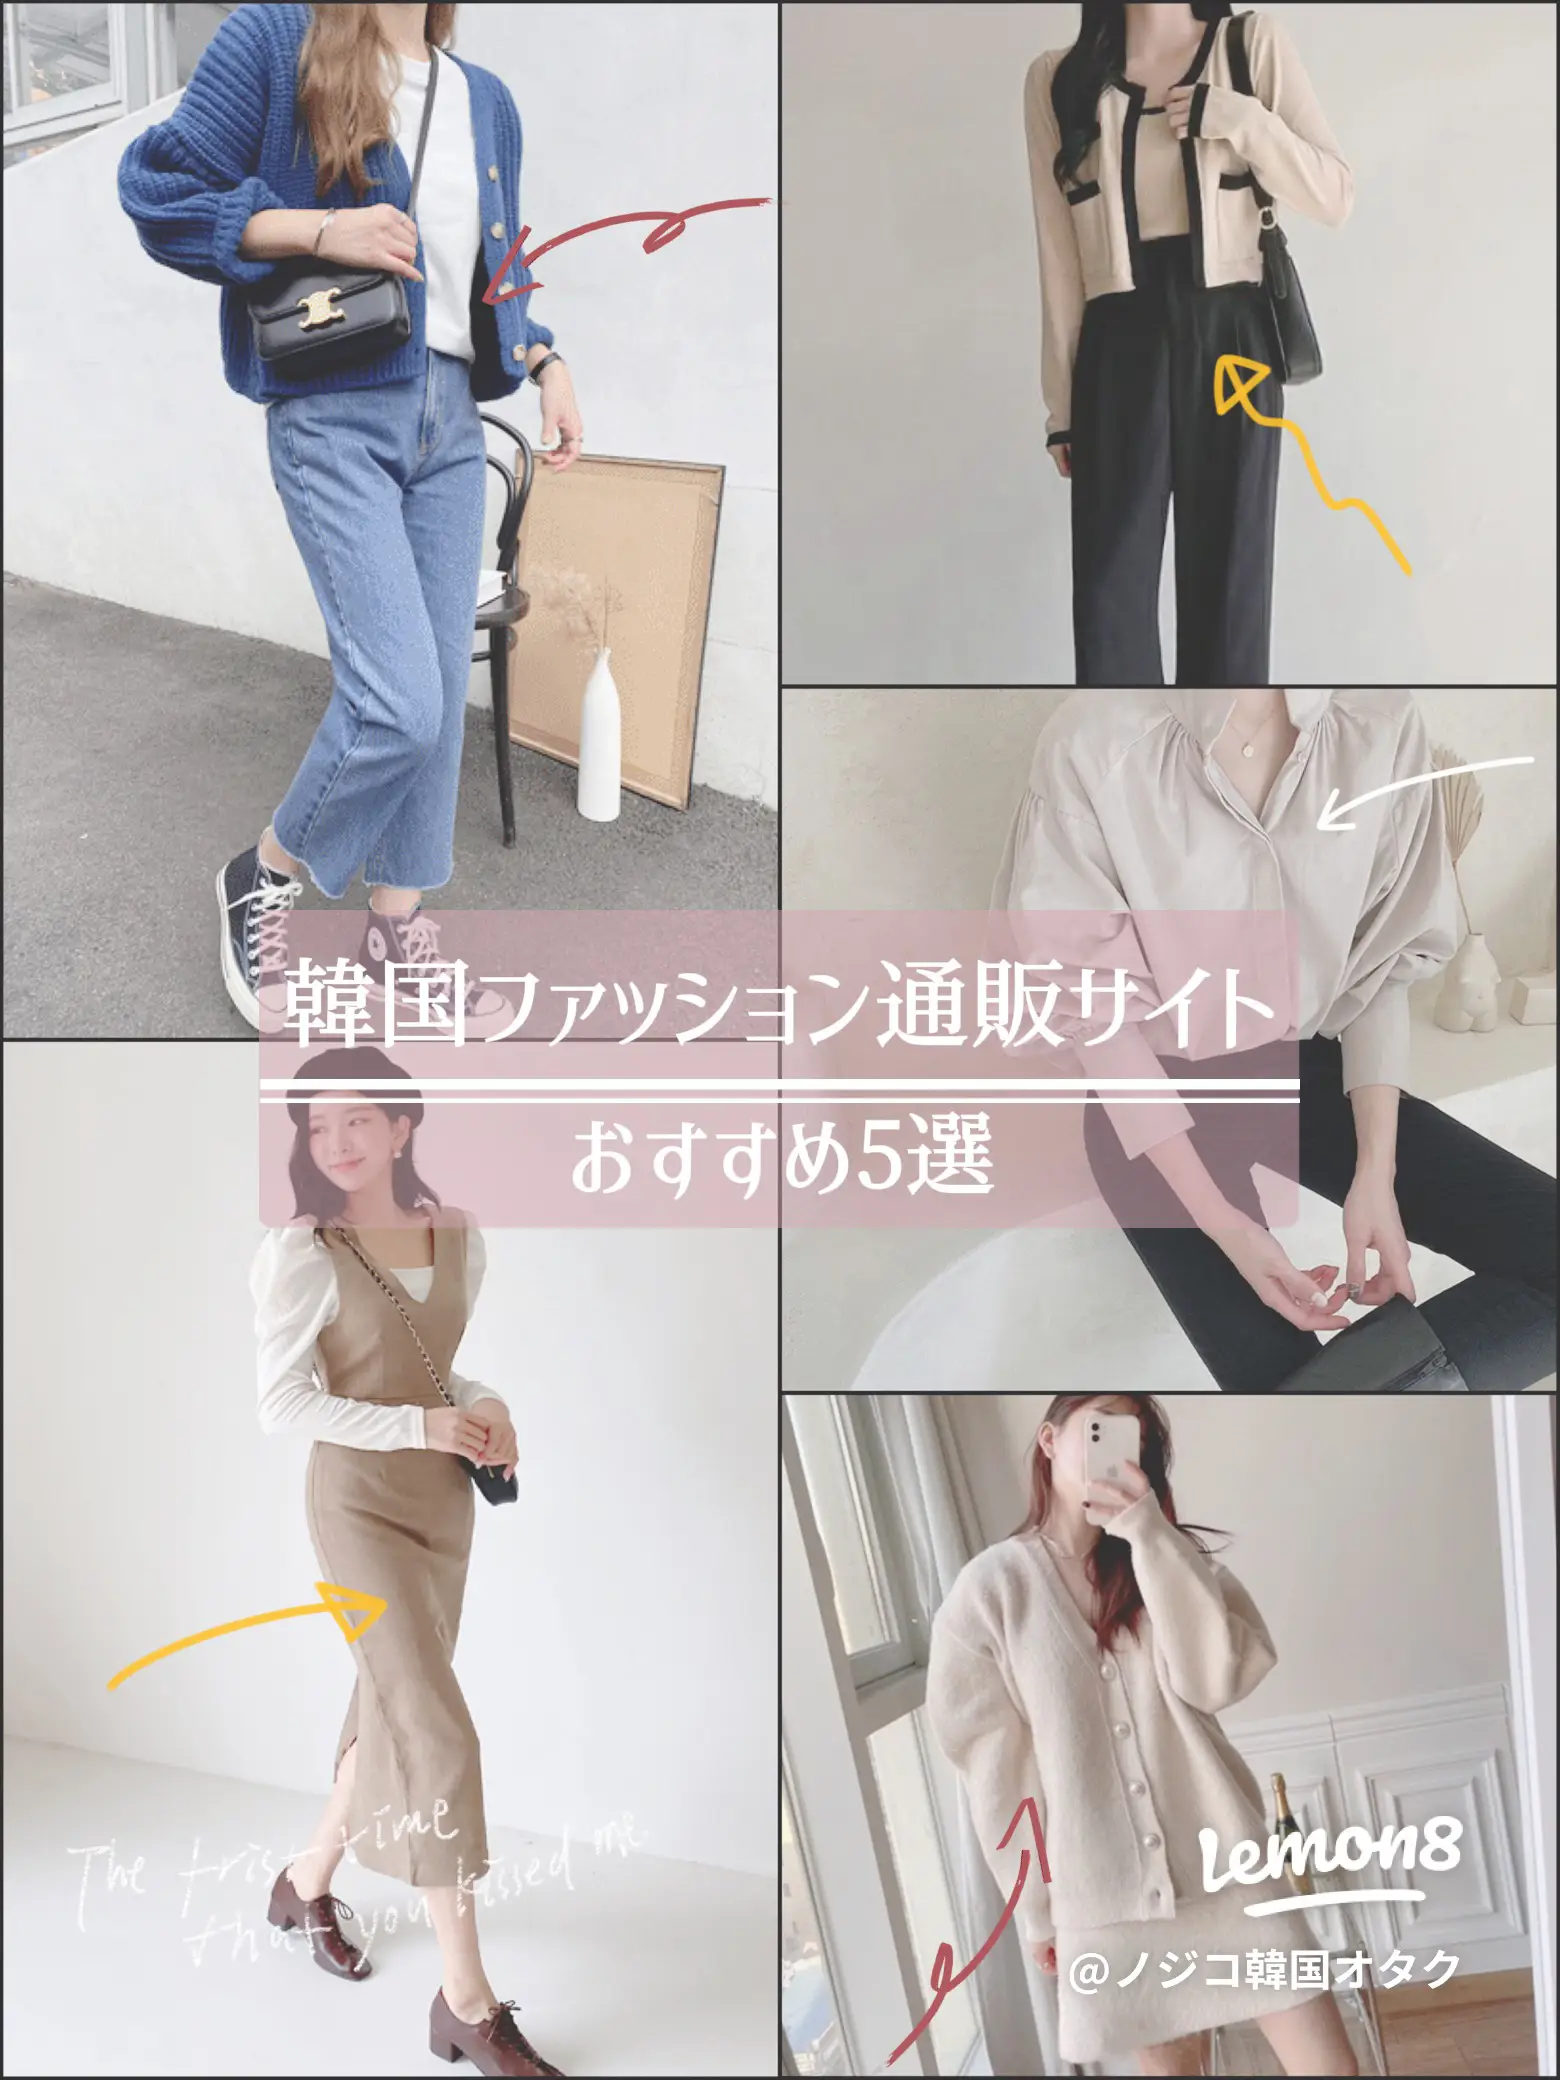 おすすめ韓国ファッション通販サイト5選 ノジコ 鶴橋 韓国オタクが投稿したフォトブック Lemon8